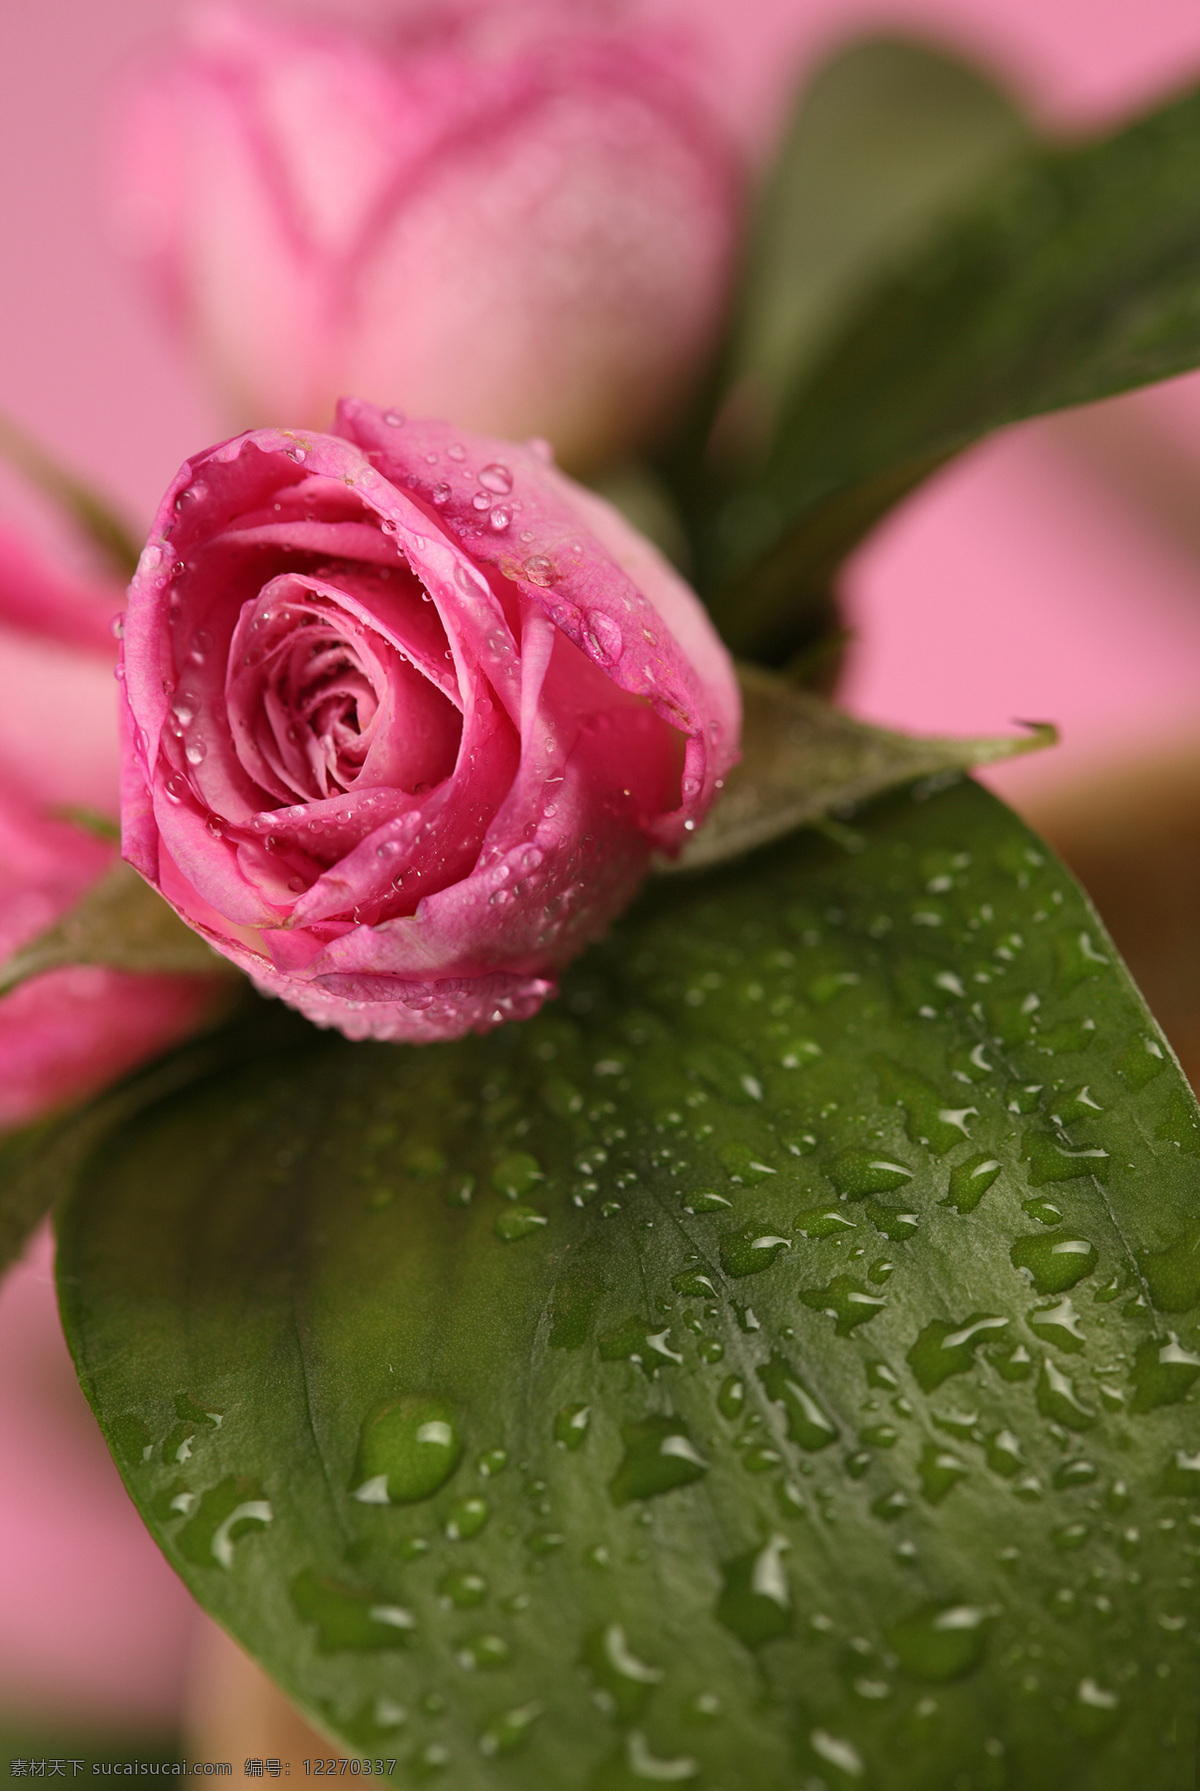 桃红色 玫瑰花 水珠 露珠 花瓣 植物花朵 美丽鲜花 漂亮花朵 花卉 鲜花摄影 花草树木 生物世界